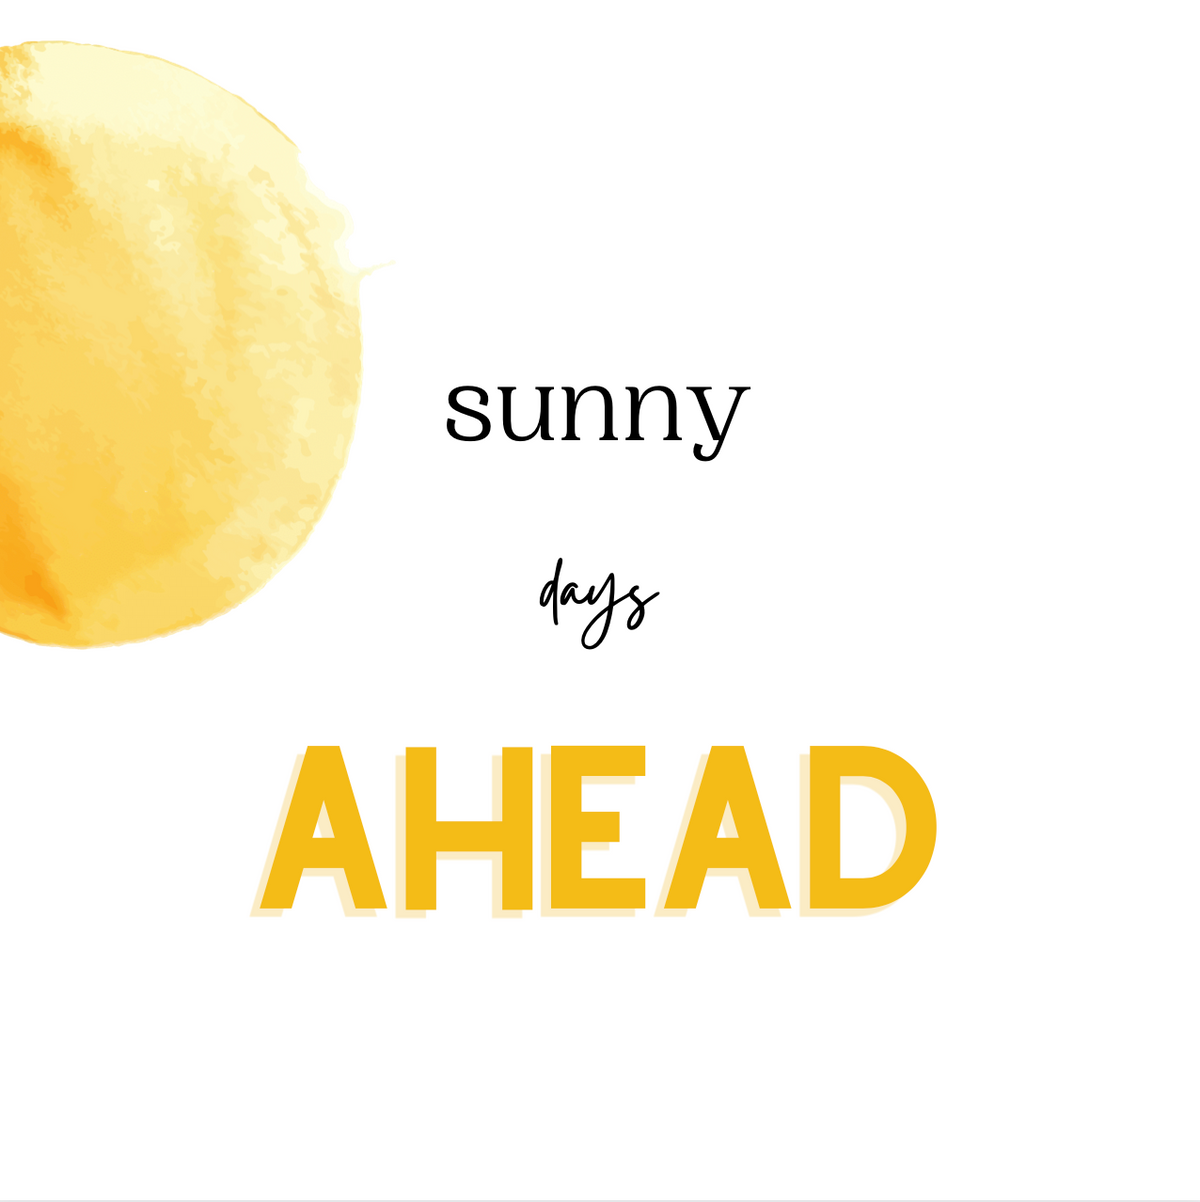 Sunny Days Ahead Card